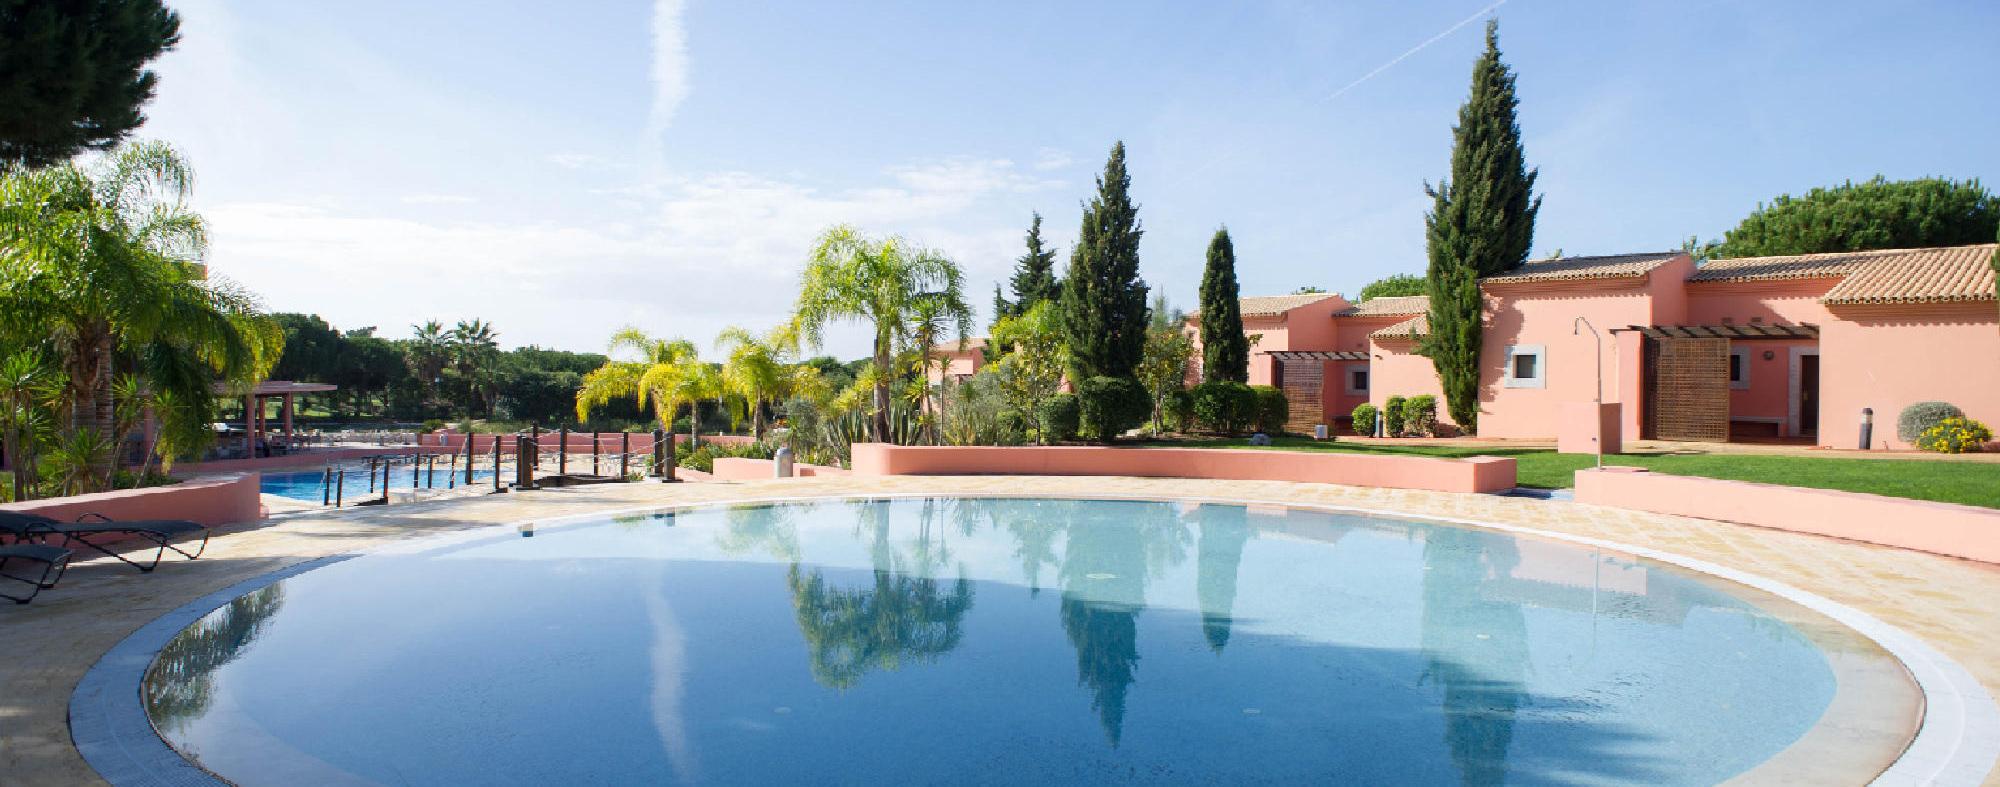 The Vila Sol Golf Resort Hotel's impressive outdoor pool in brilliant Algarve.